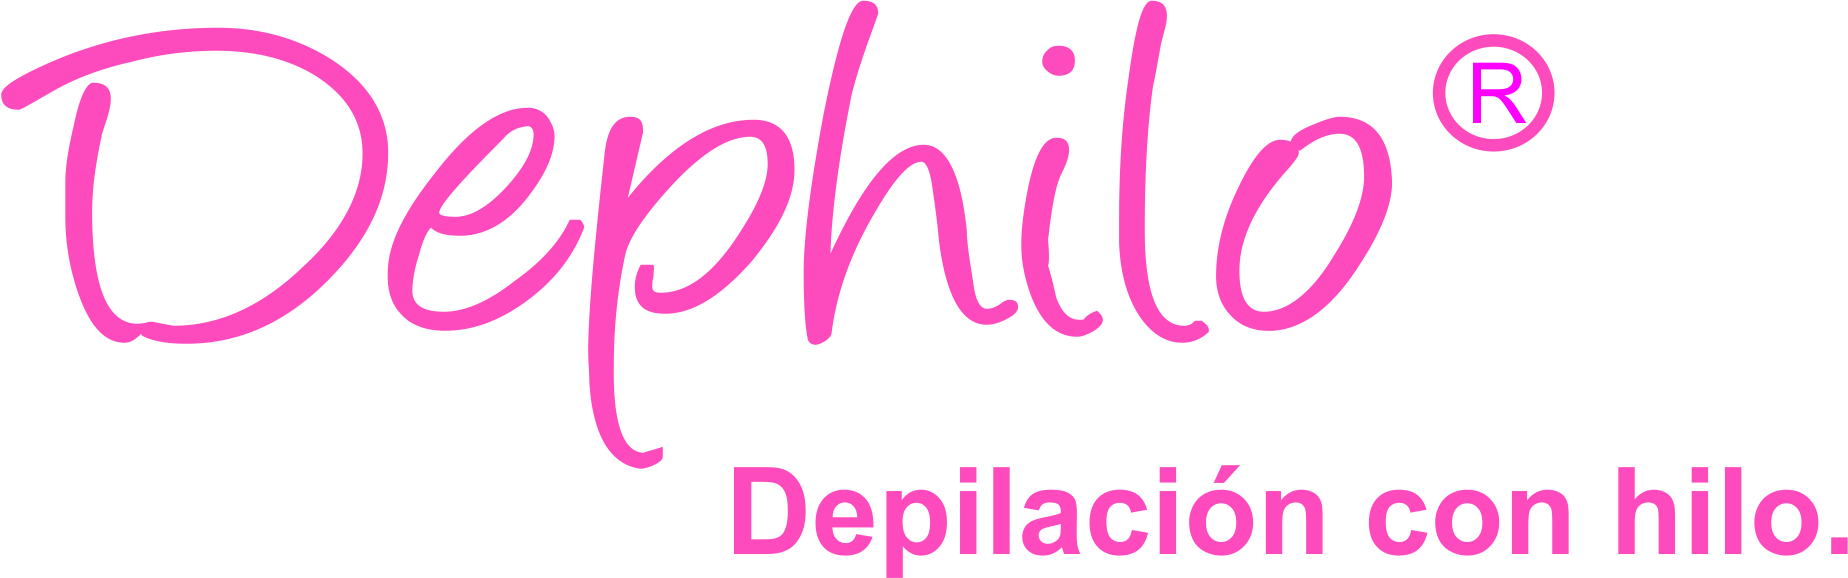 Dephilo